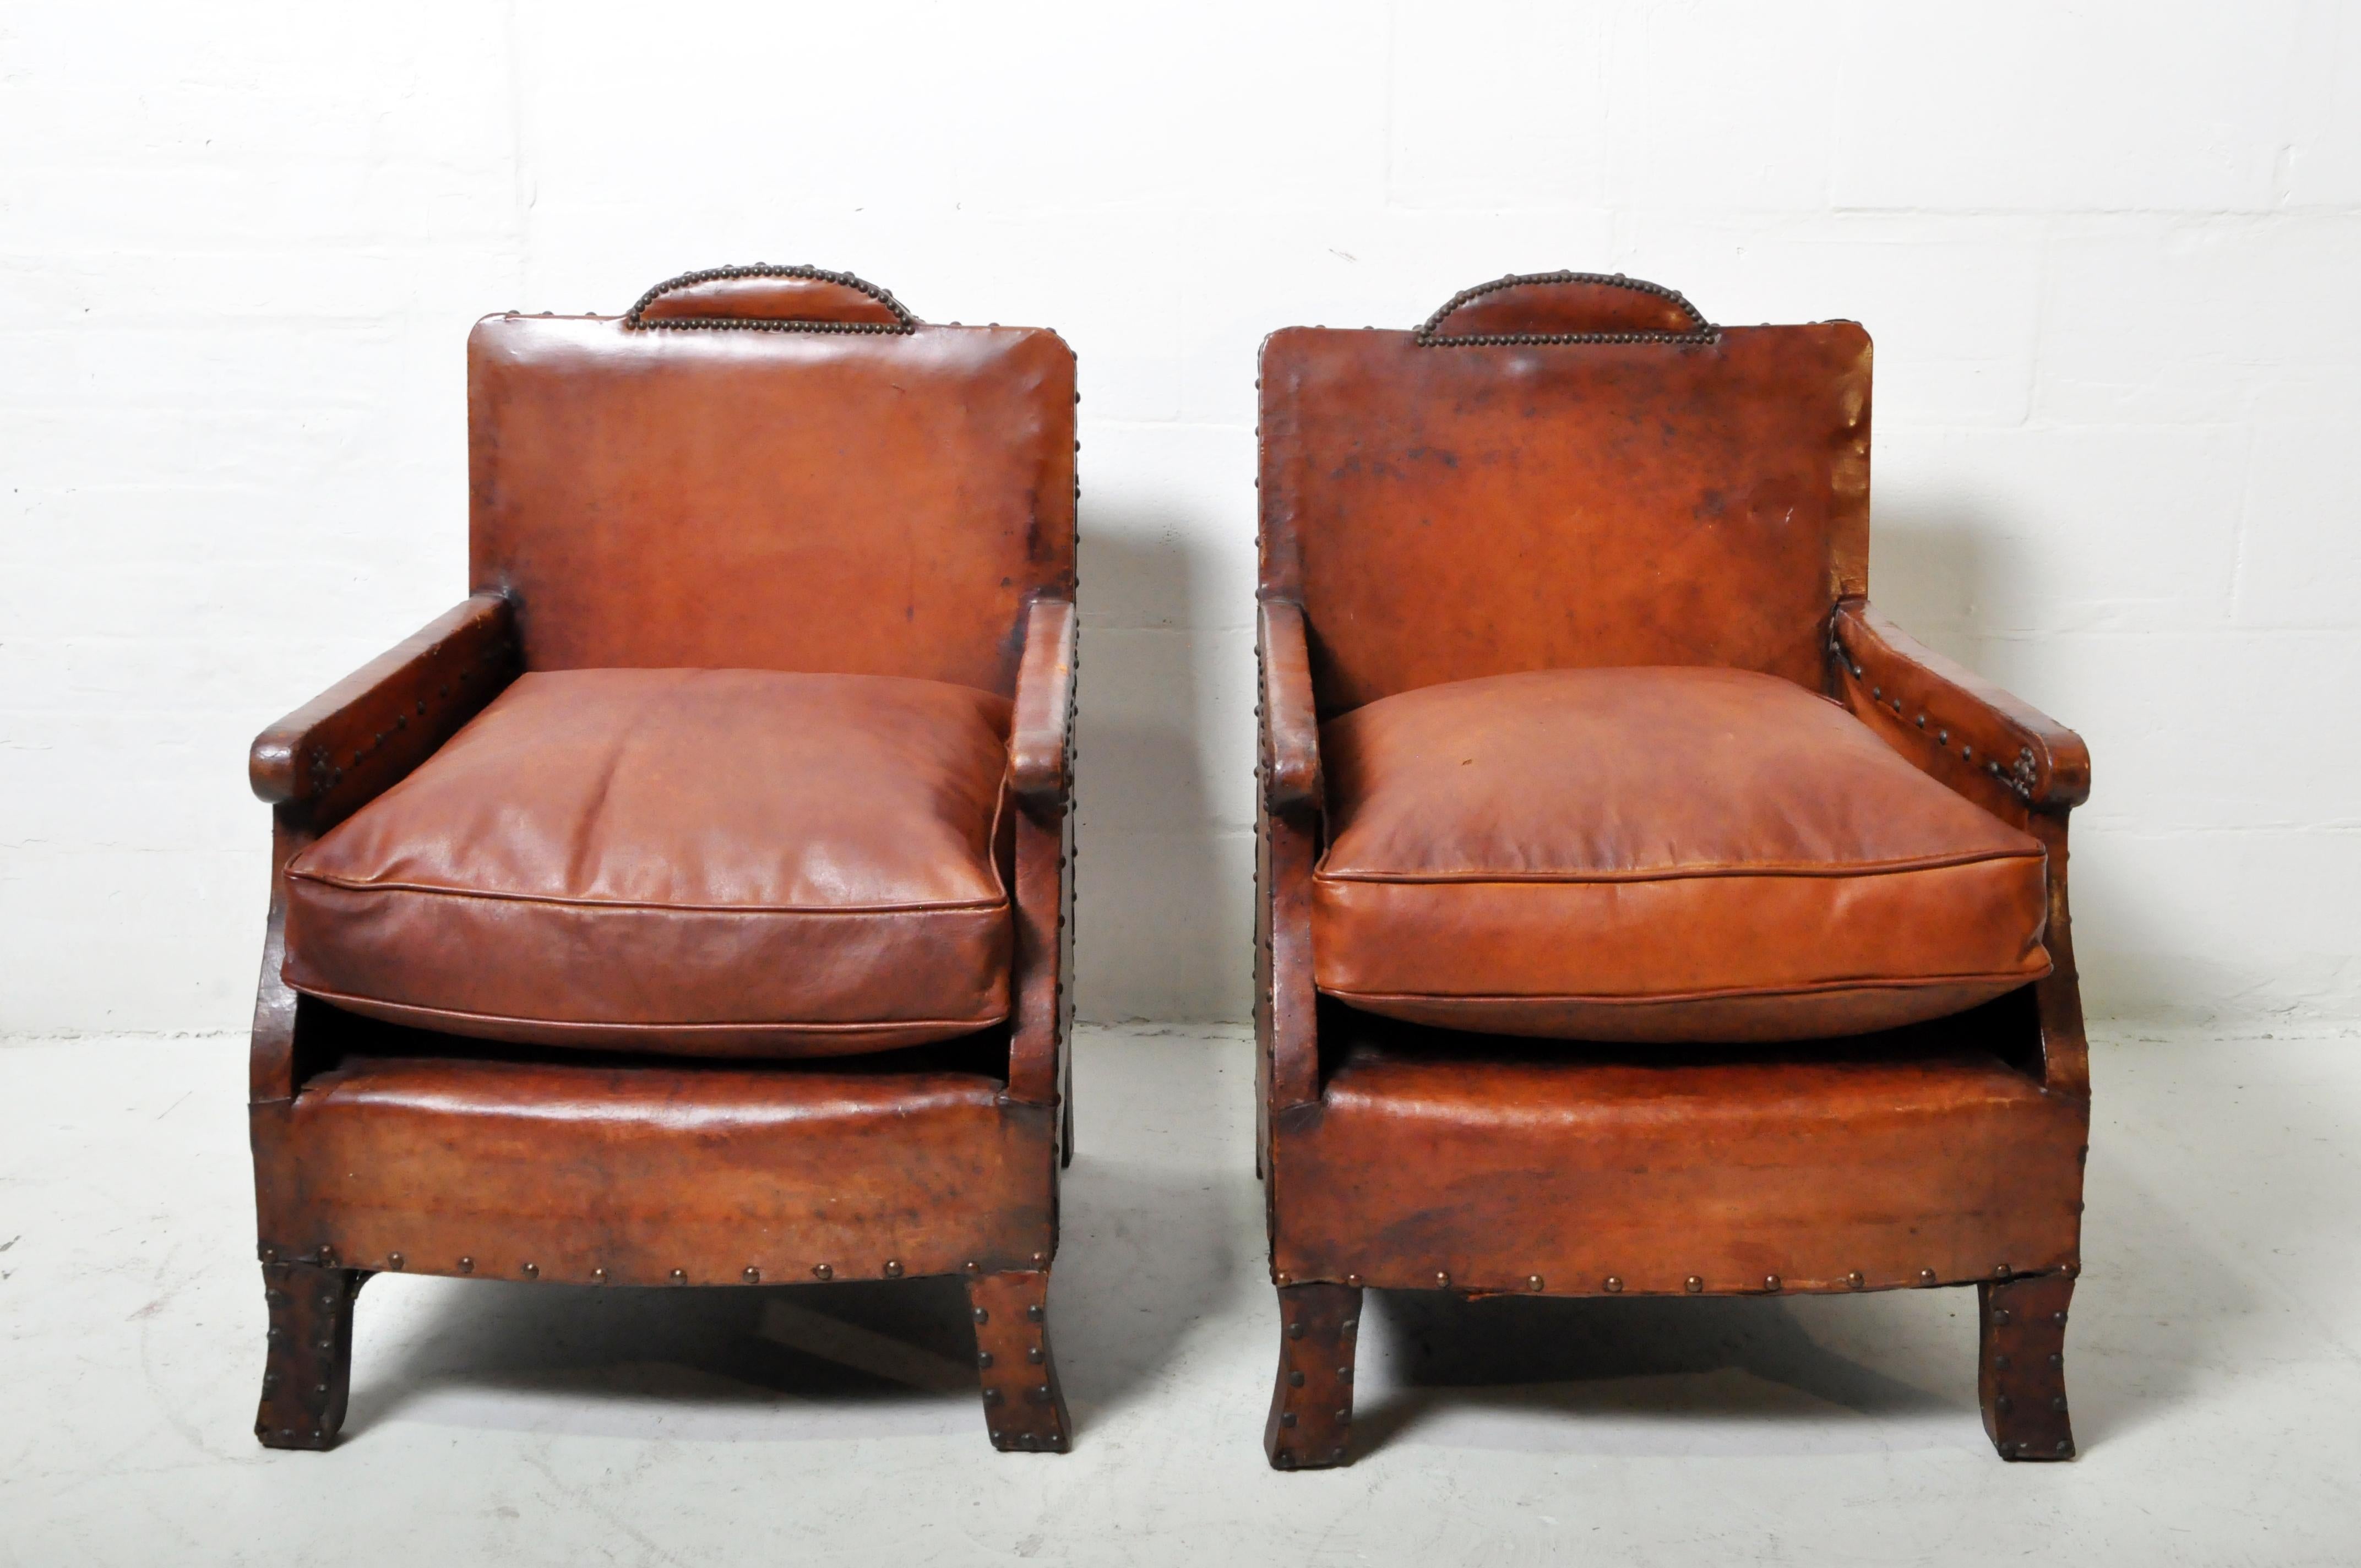 Une paire exceptionnelle de petits fauteuils club en cuir Art Deco français vintage. Le cuir est en bon état avec une excellente patine et seulement des égratignures attendues et modestes, des déchirures réparées et d'autres imperfections de l'âge.